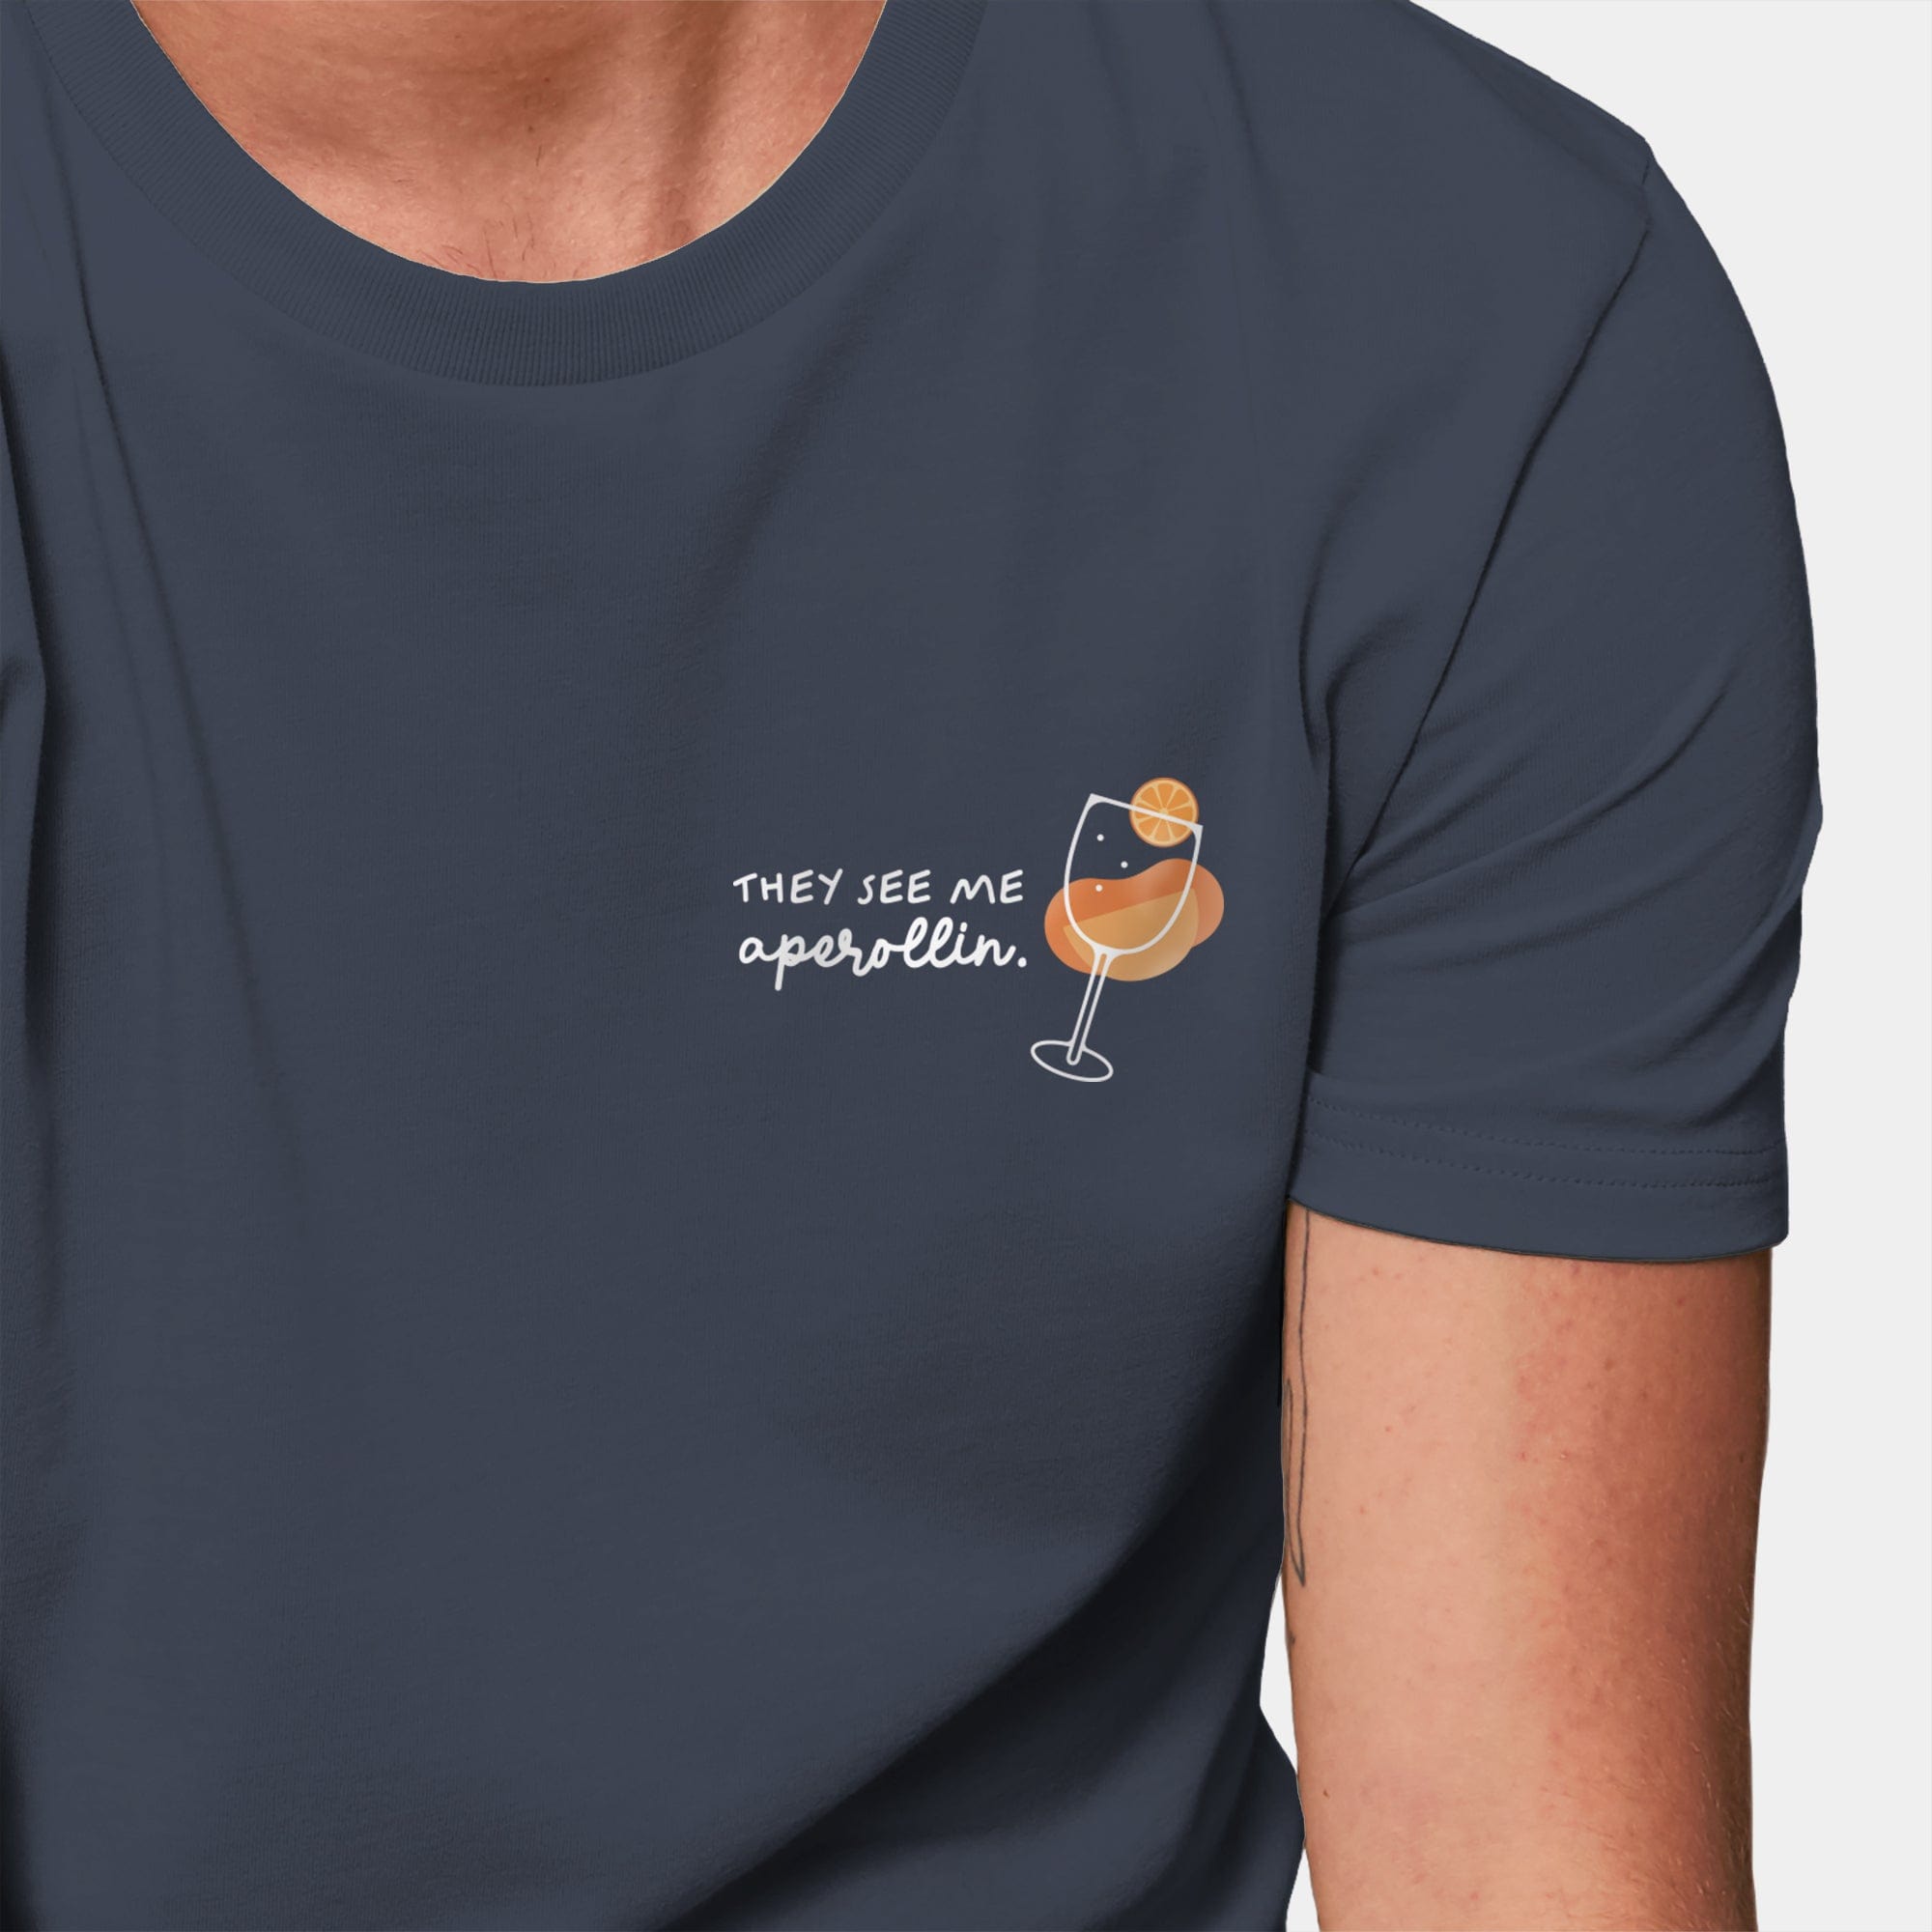 HEITER & LÄSSIG T-Shirt "Aperollin" S / india ink grey - aus nachhaltiger und fairer Produktion